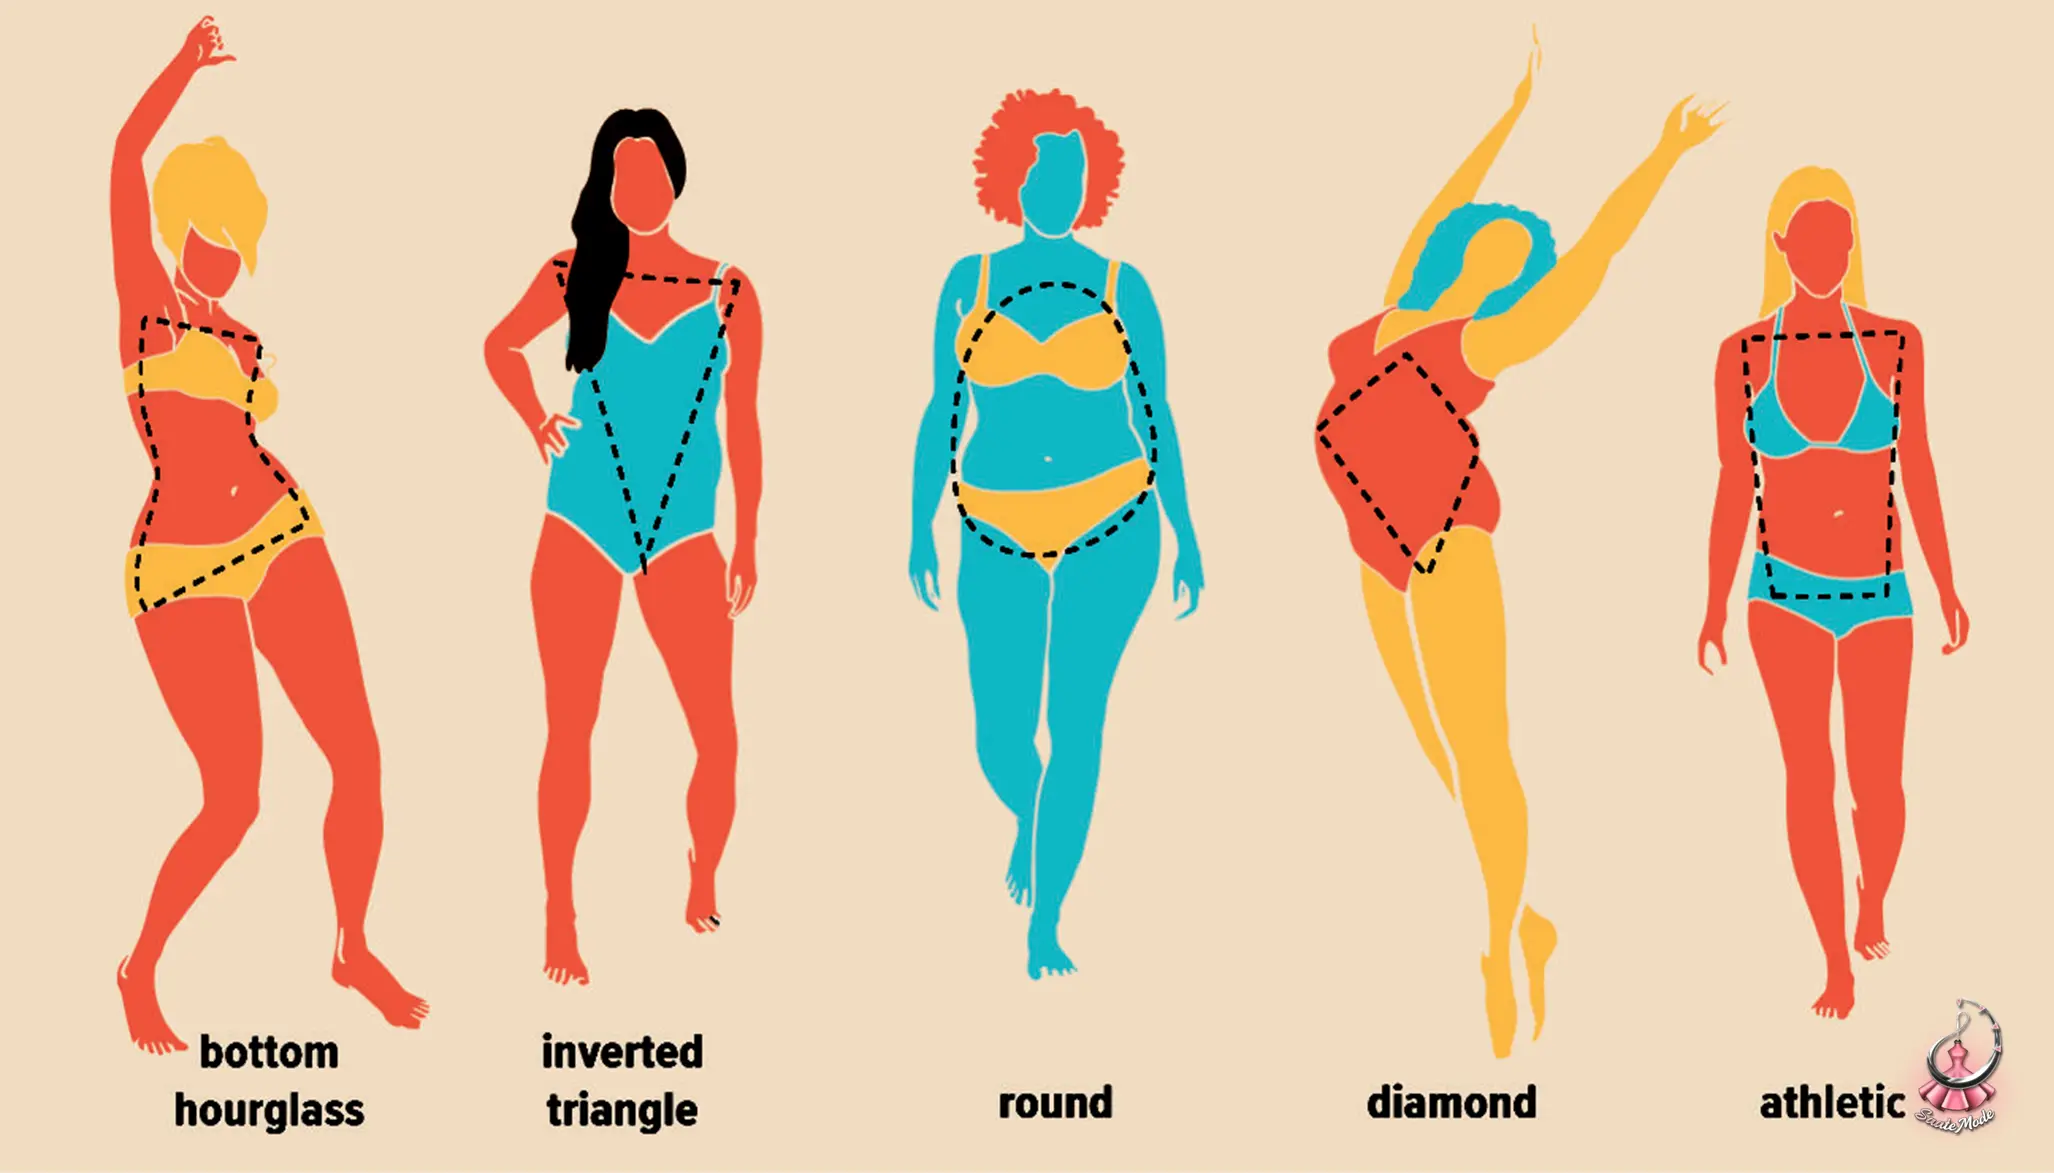 انواع فرم بدن زنانه